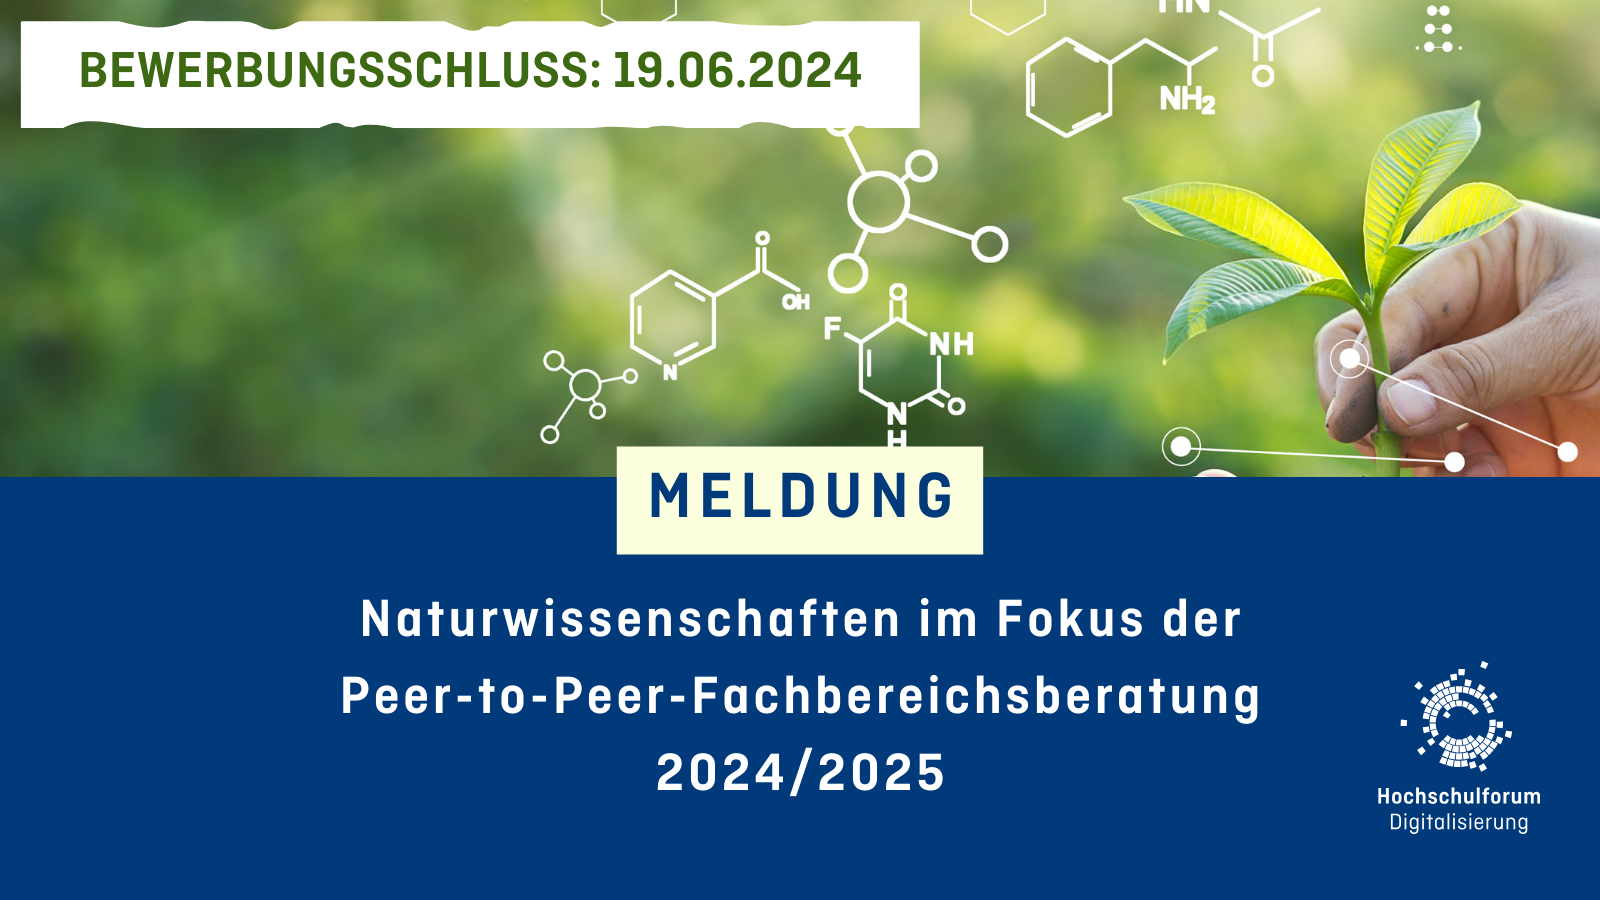 Naturwissenschaften im Fokus der Peer-to-Peer-Fachbereichsberatung 2024/2025